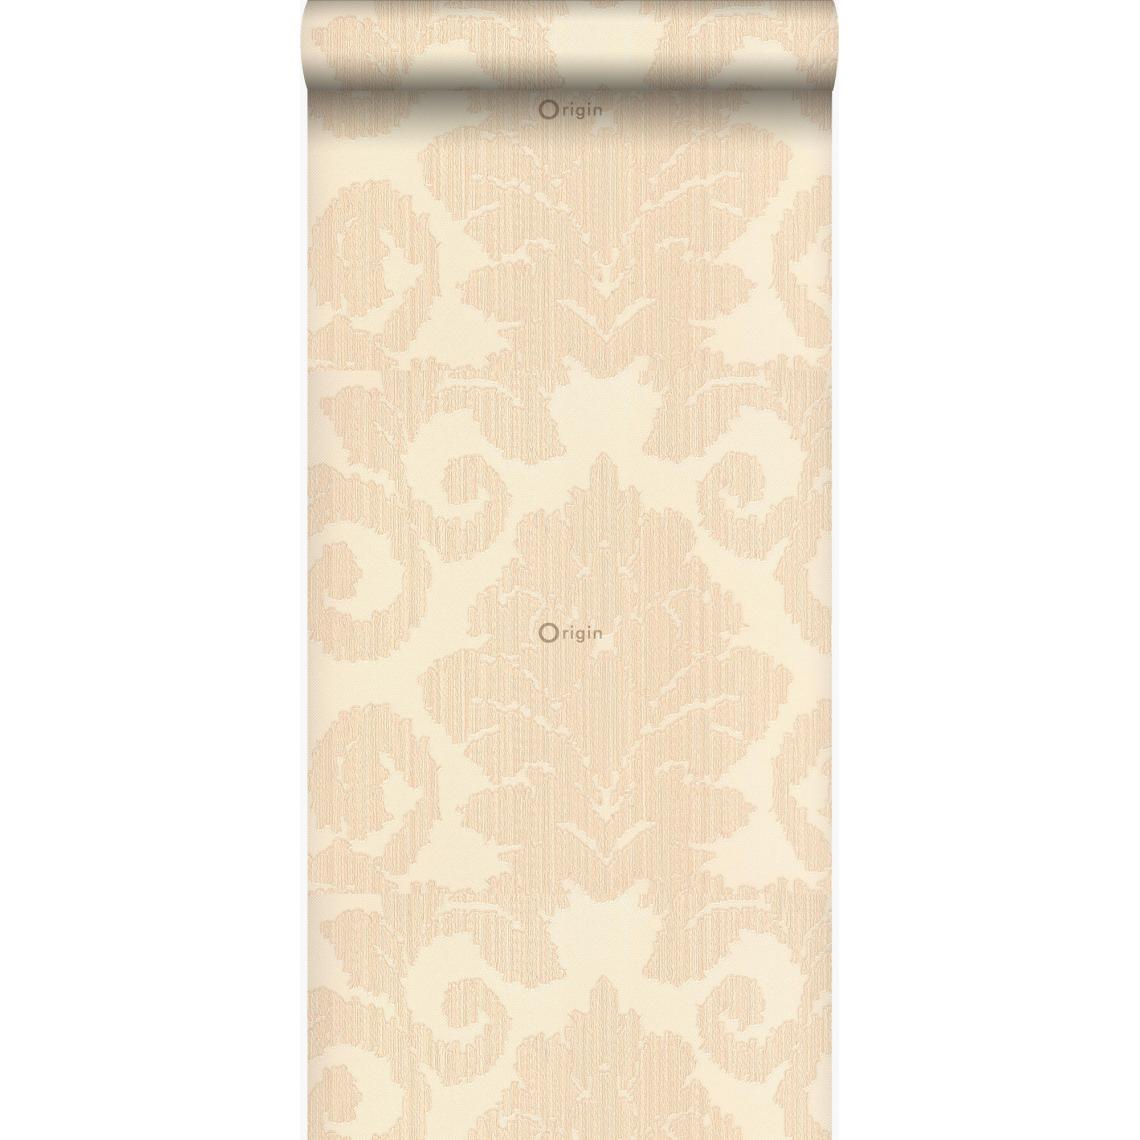 Origin - Origin papier peint ornements beige crème - 306702 - 70 cm x 10,05 m - Papier peint